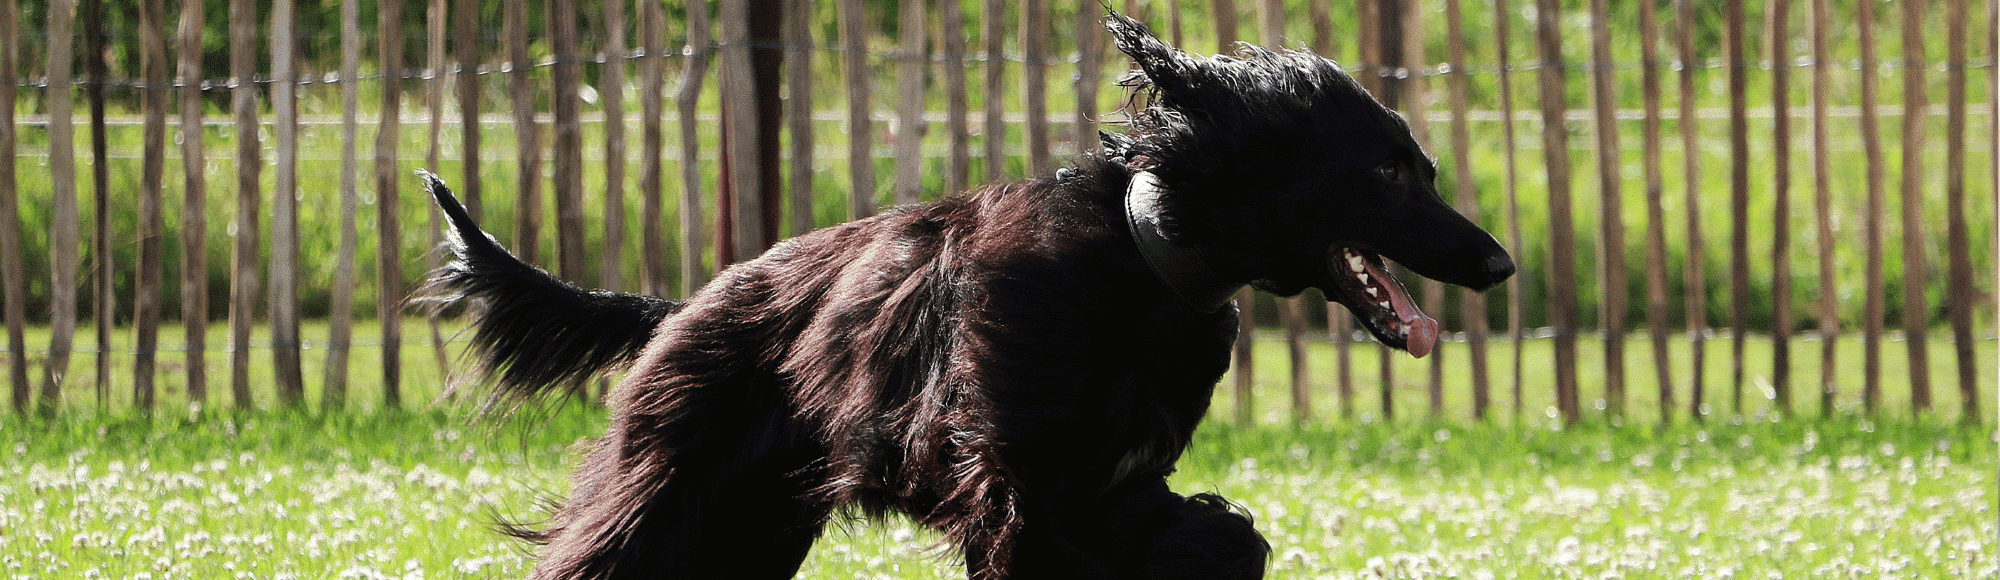 Ein schwarzer Afghanischer Windhund auf einer Wiese